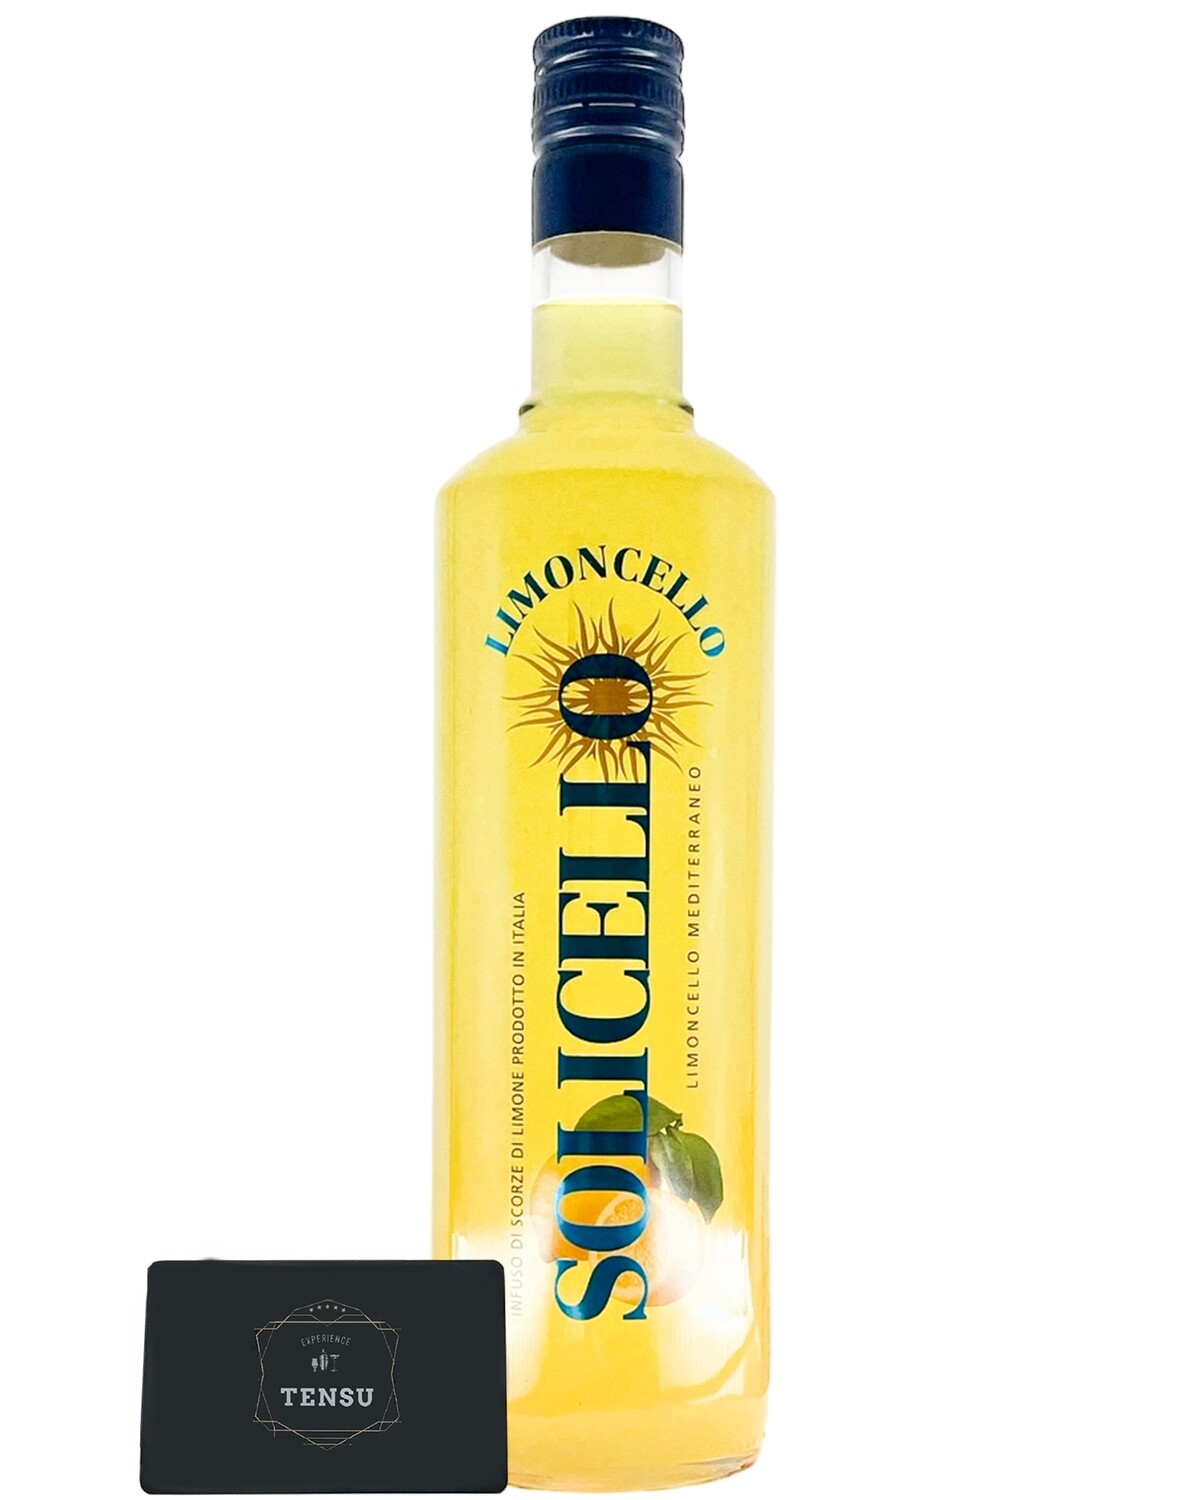 Limoncello Solicello 28.0% (0.70 Liter)